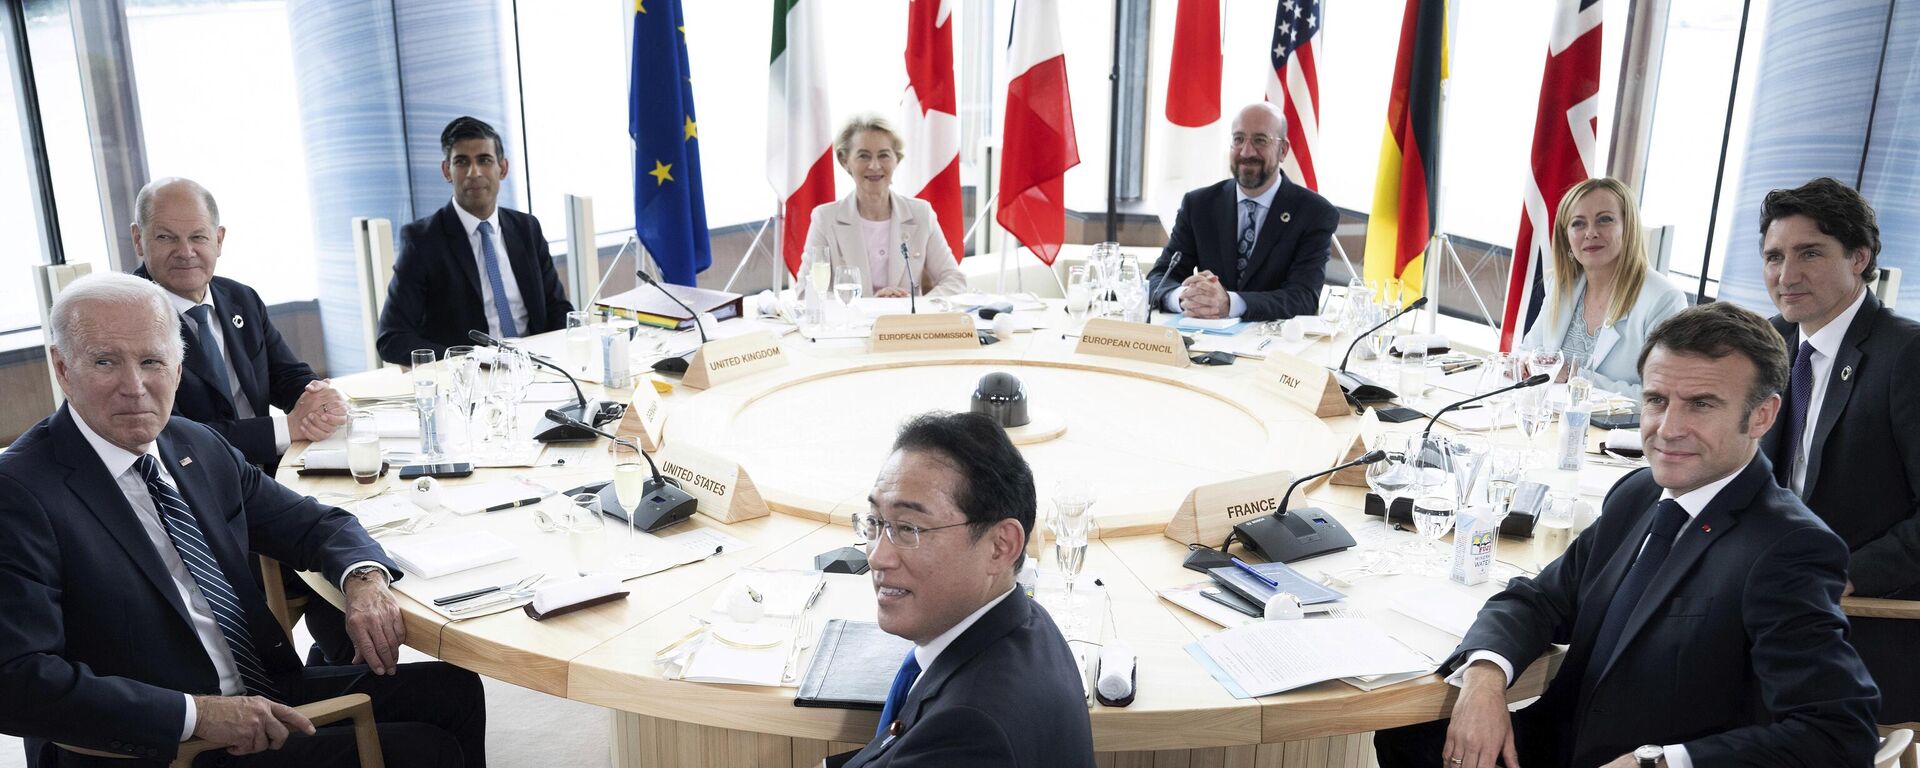 Em sentido horário, a partir da esquerda: o presidente dos EUA, Joe Biden; o chanceler da Alemanha, Olaf Scholz; o primeiro-ministro do Reino Unido, Rishi Sunak; a presidente da Comissão Europeia, Ursula von der Leyen; o presidente do Conselho Europeu, Charles Michel; a primeira-ministra da Itália, Giorgia Meloni; o primeiro-ministro do Canadá, Justin Trudeau; o presidente da França, Emmanuel Macron; e o primeiro-ministro do Japão, Fumio Kishida. Reúnem-se na cúpula de líderes do G7 em Hiroshima, no Japão, em 19 de maio de 2023 - Sputnik Brasil, 1920, 19.05.2023